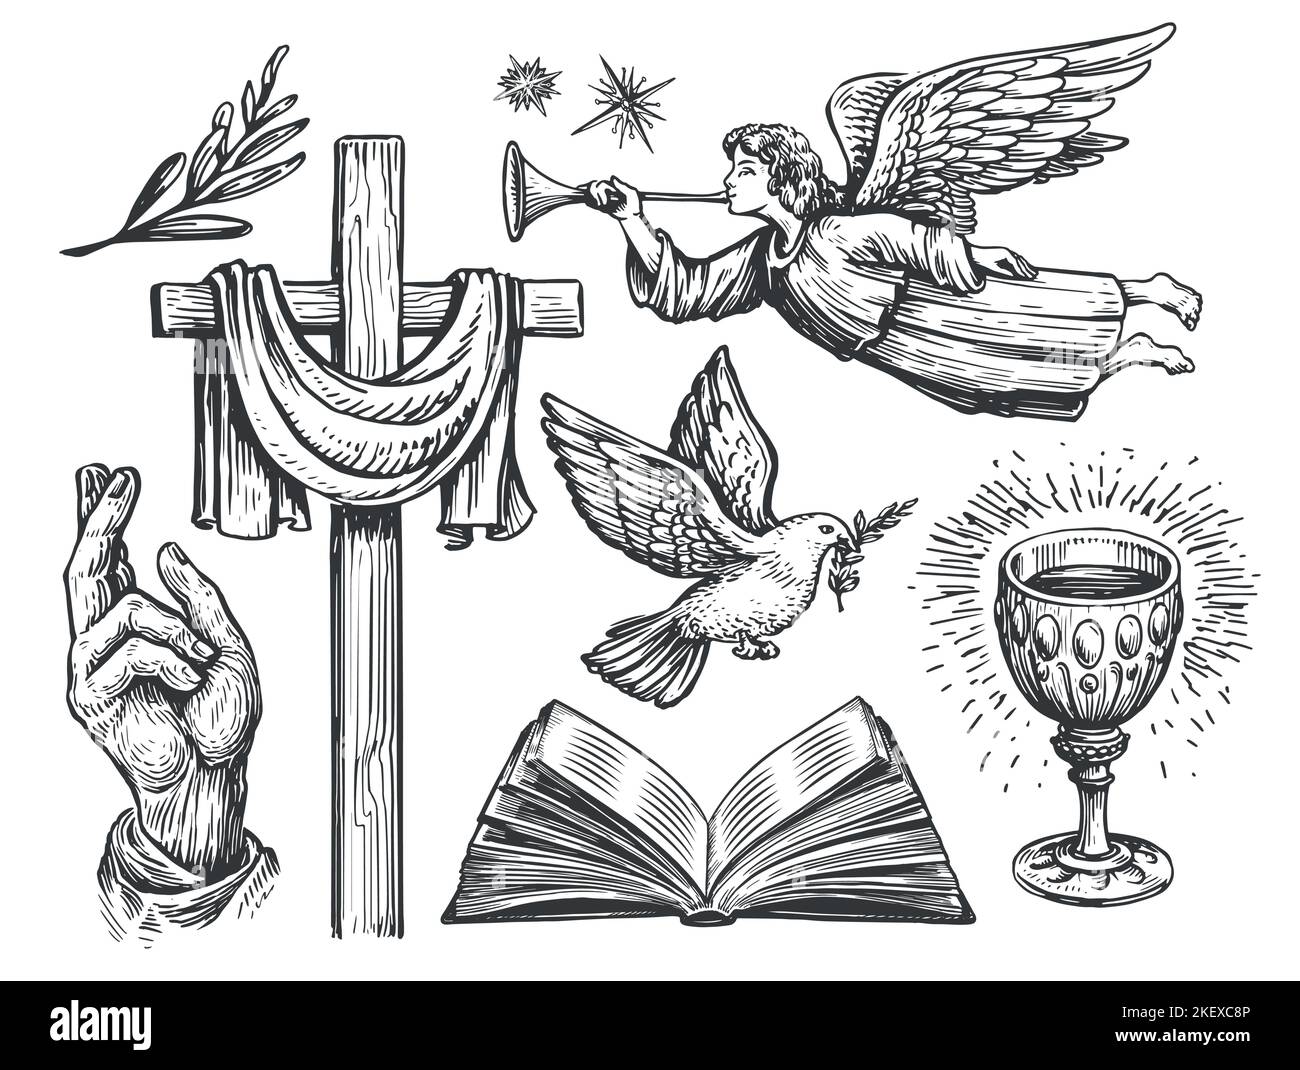 Christliches Holzkreuz, Segende Hand, Fliegende Taube mit Olivenzweig, Engel, Offene bibel, Heiliger Gral. Religionssymbole Stock Vektor